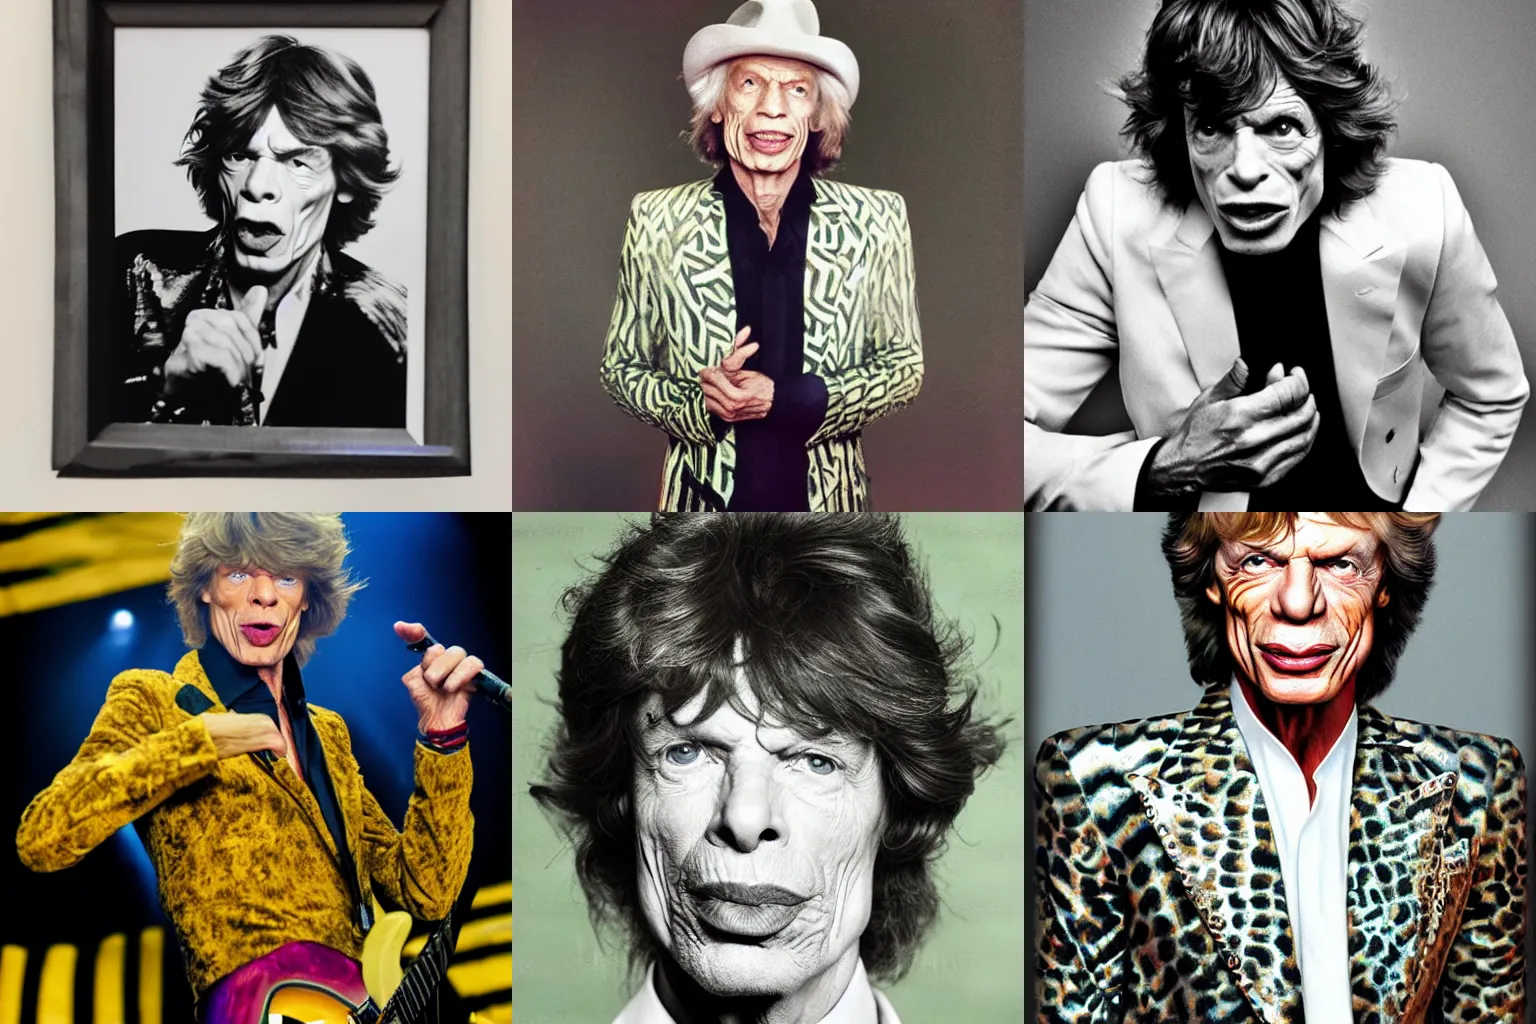 Prompt: Mr Jagger